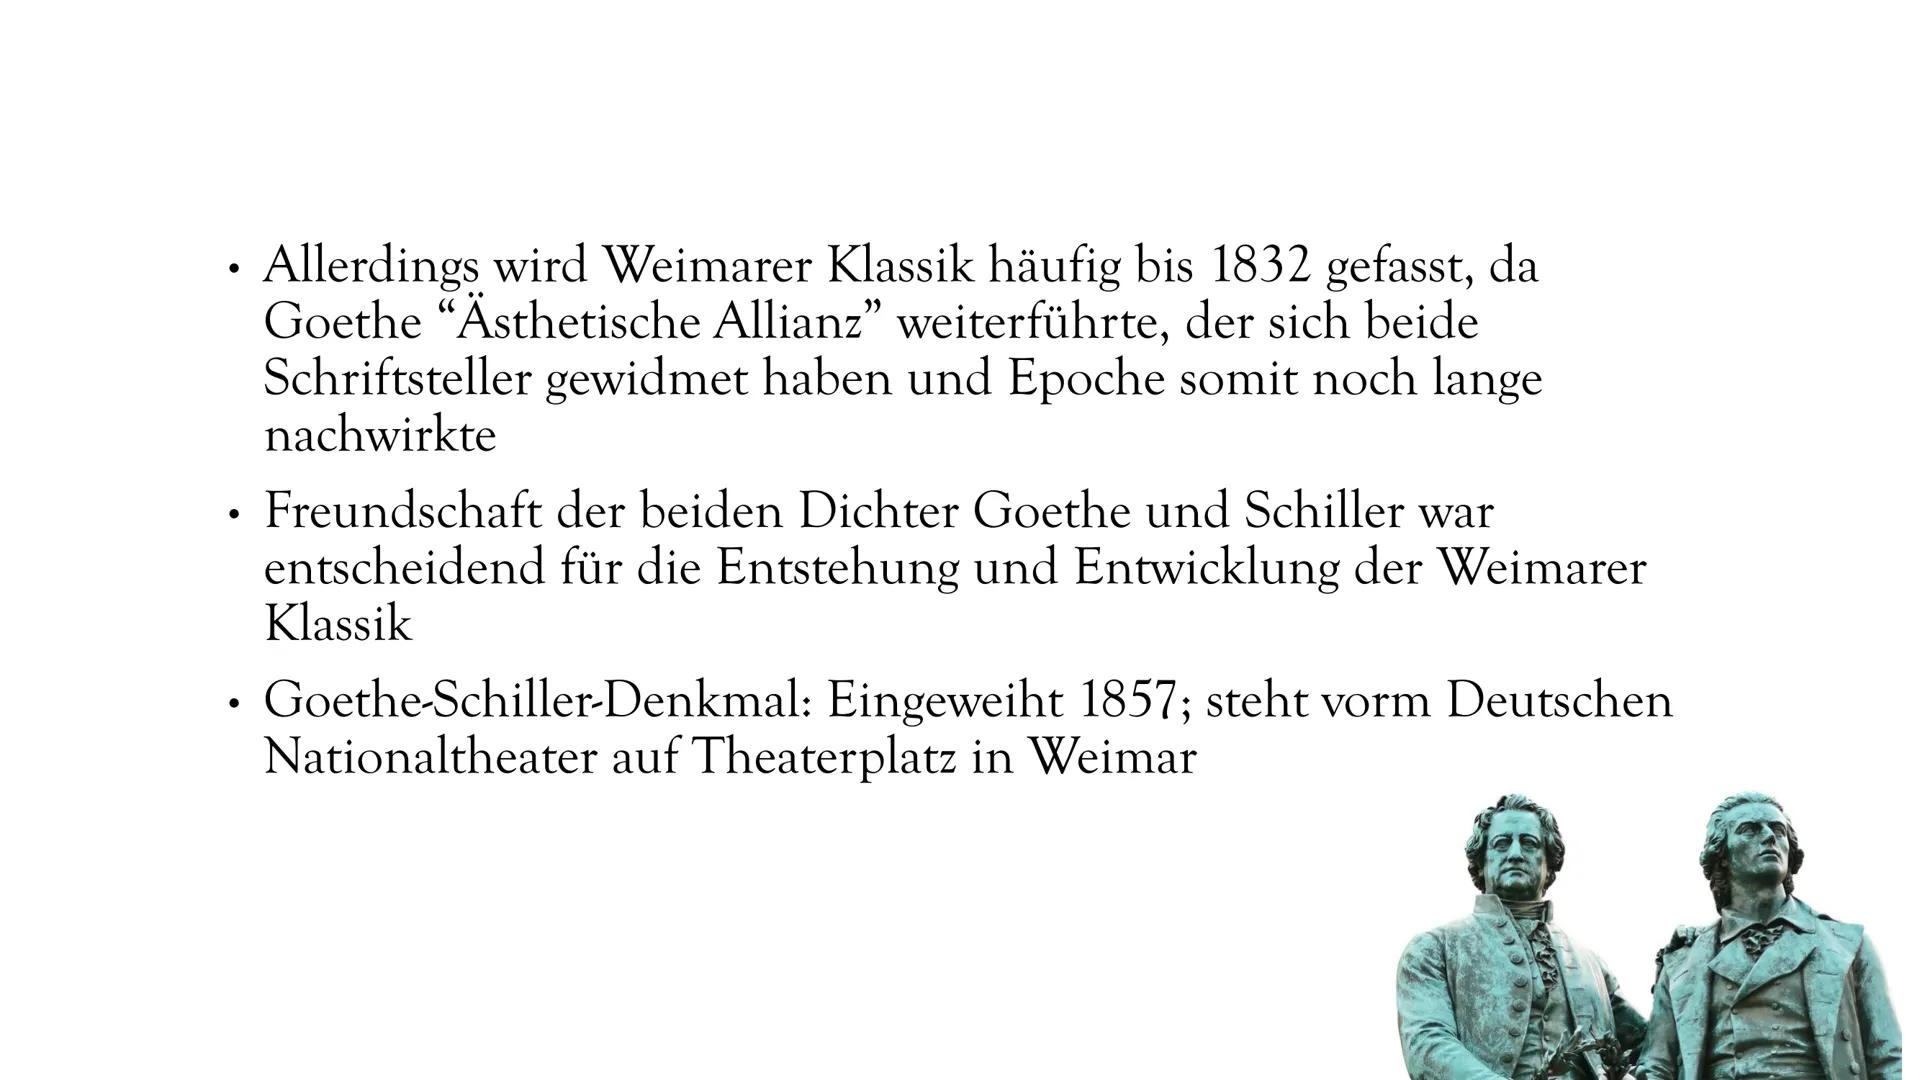 DIE WEIMARER
KLASSIK
1786-1832 ALLES WANKET, WO DER GLAUBE FEHLT."
FRIEDRICH SCHILLER: WALLENSTEINS TOD
(WICHTIGES WERK DER WEIMARER KLASSIK